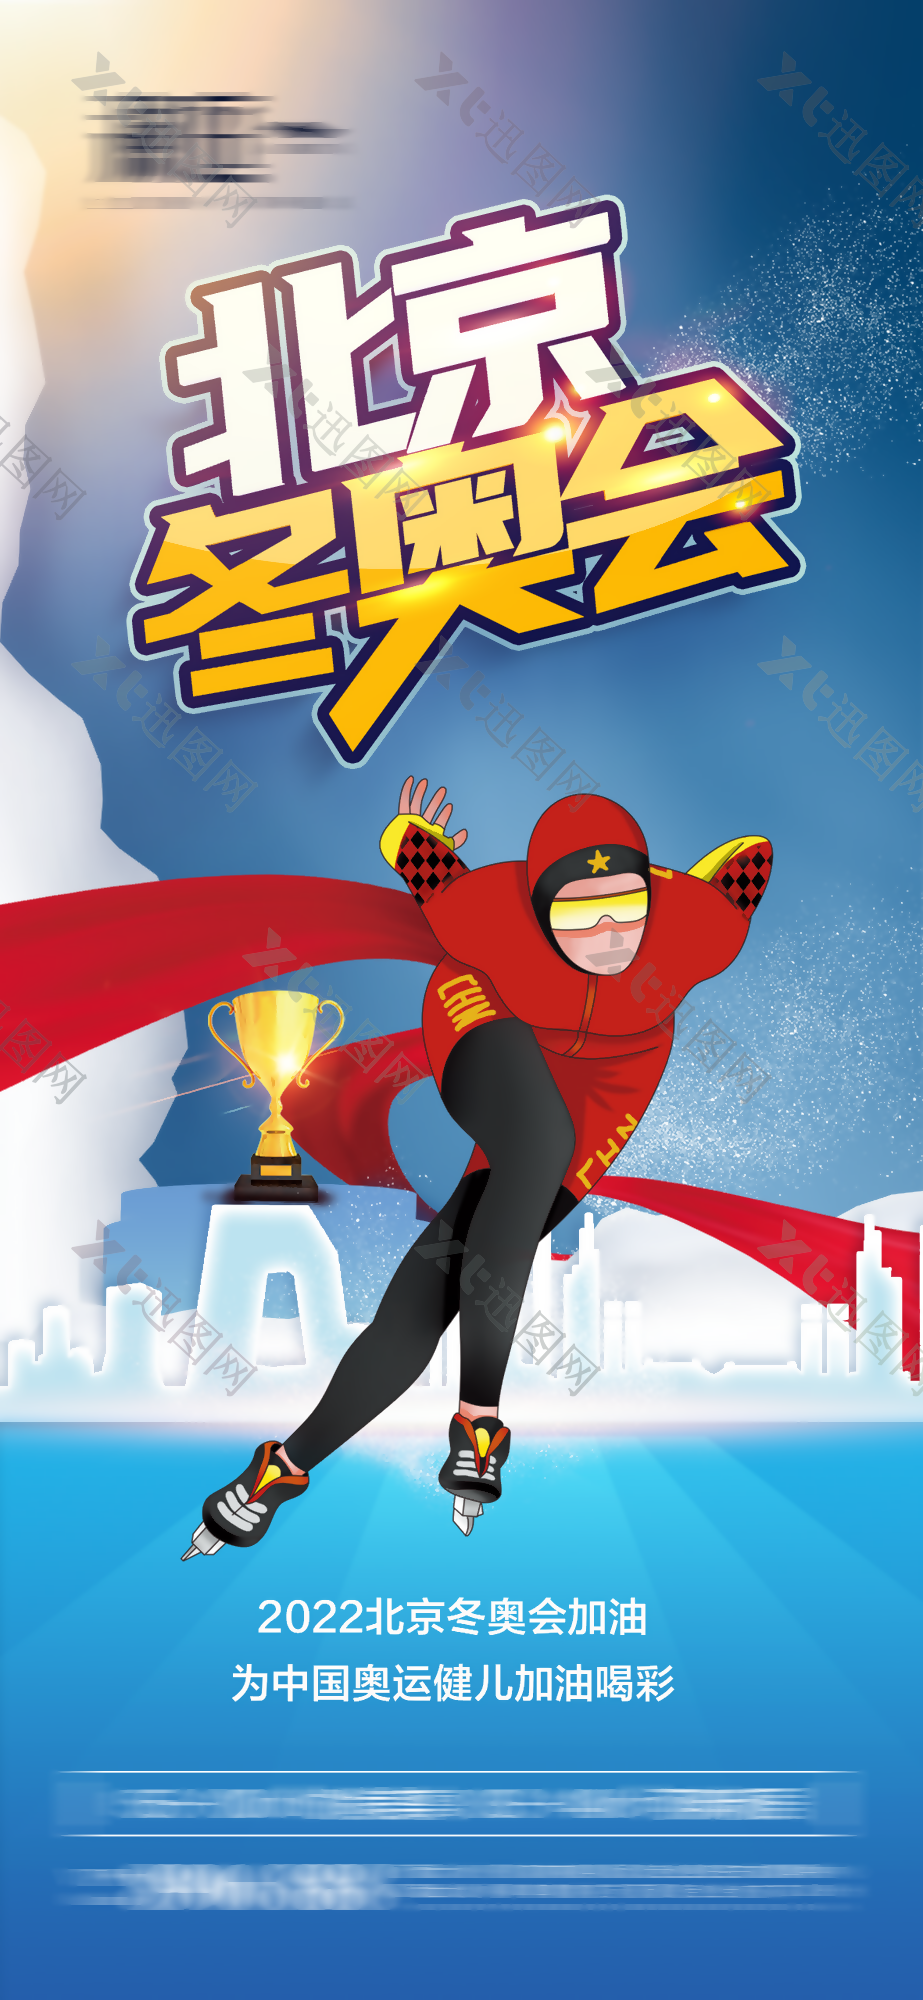 2022年北京冬奥会海报设计